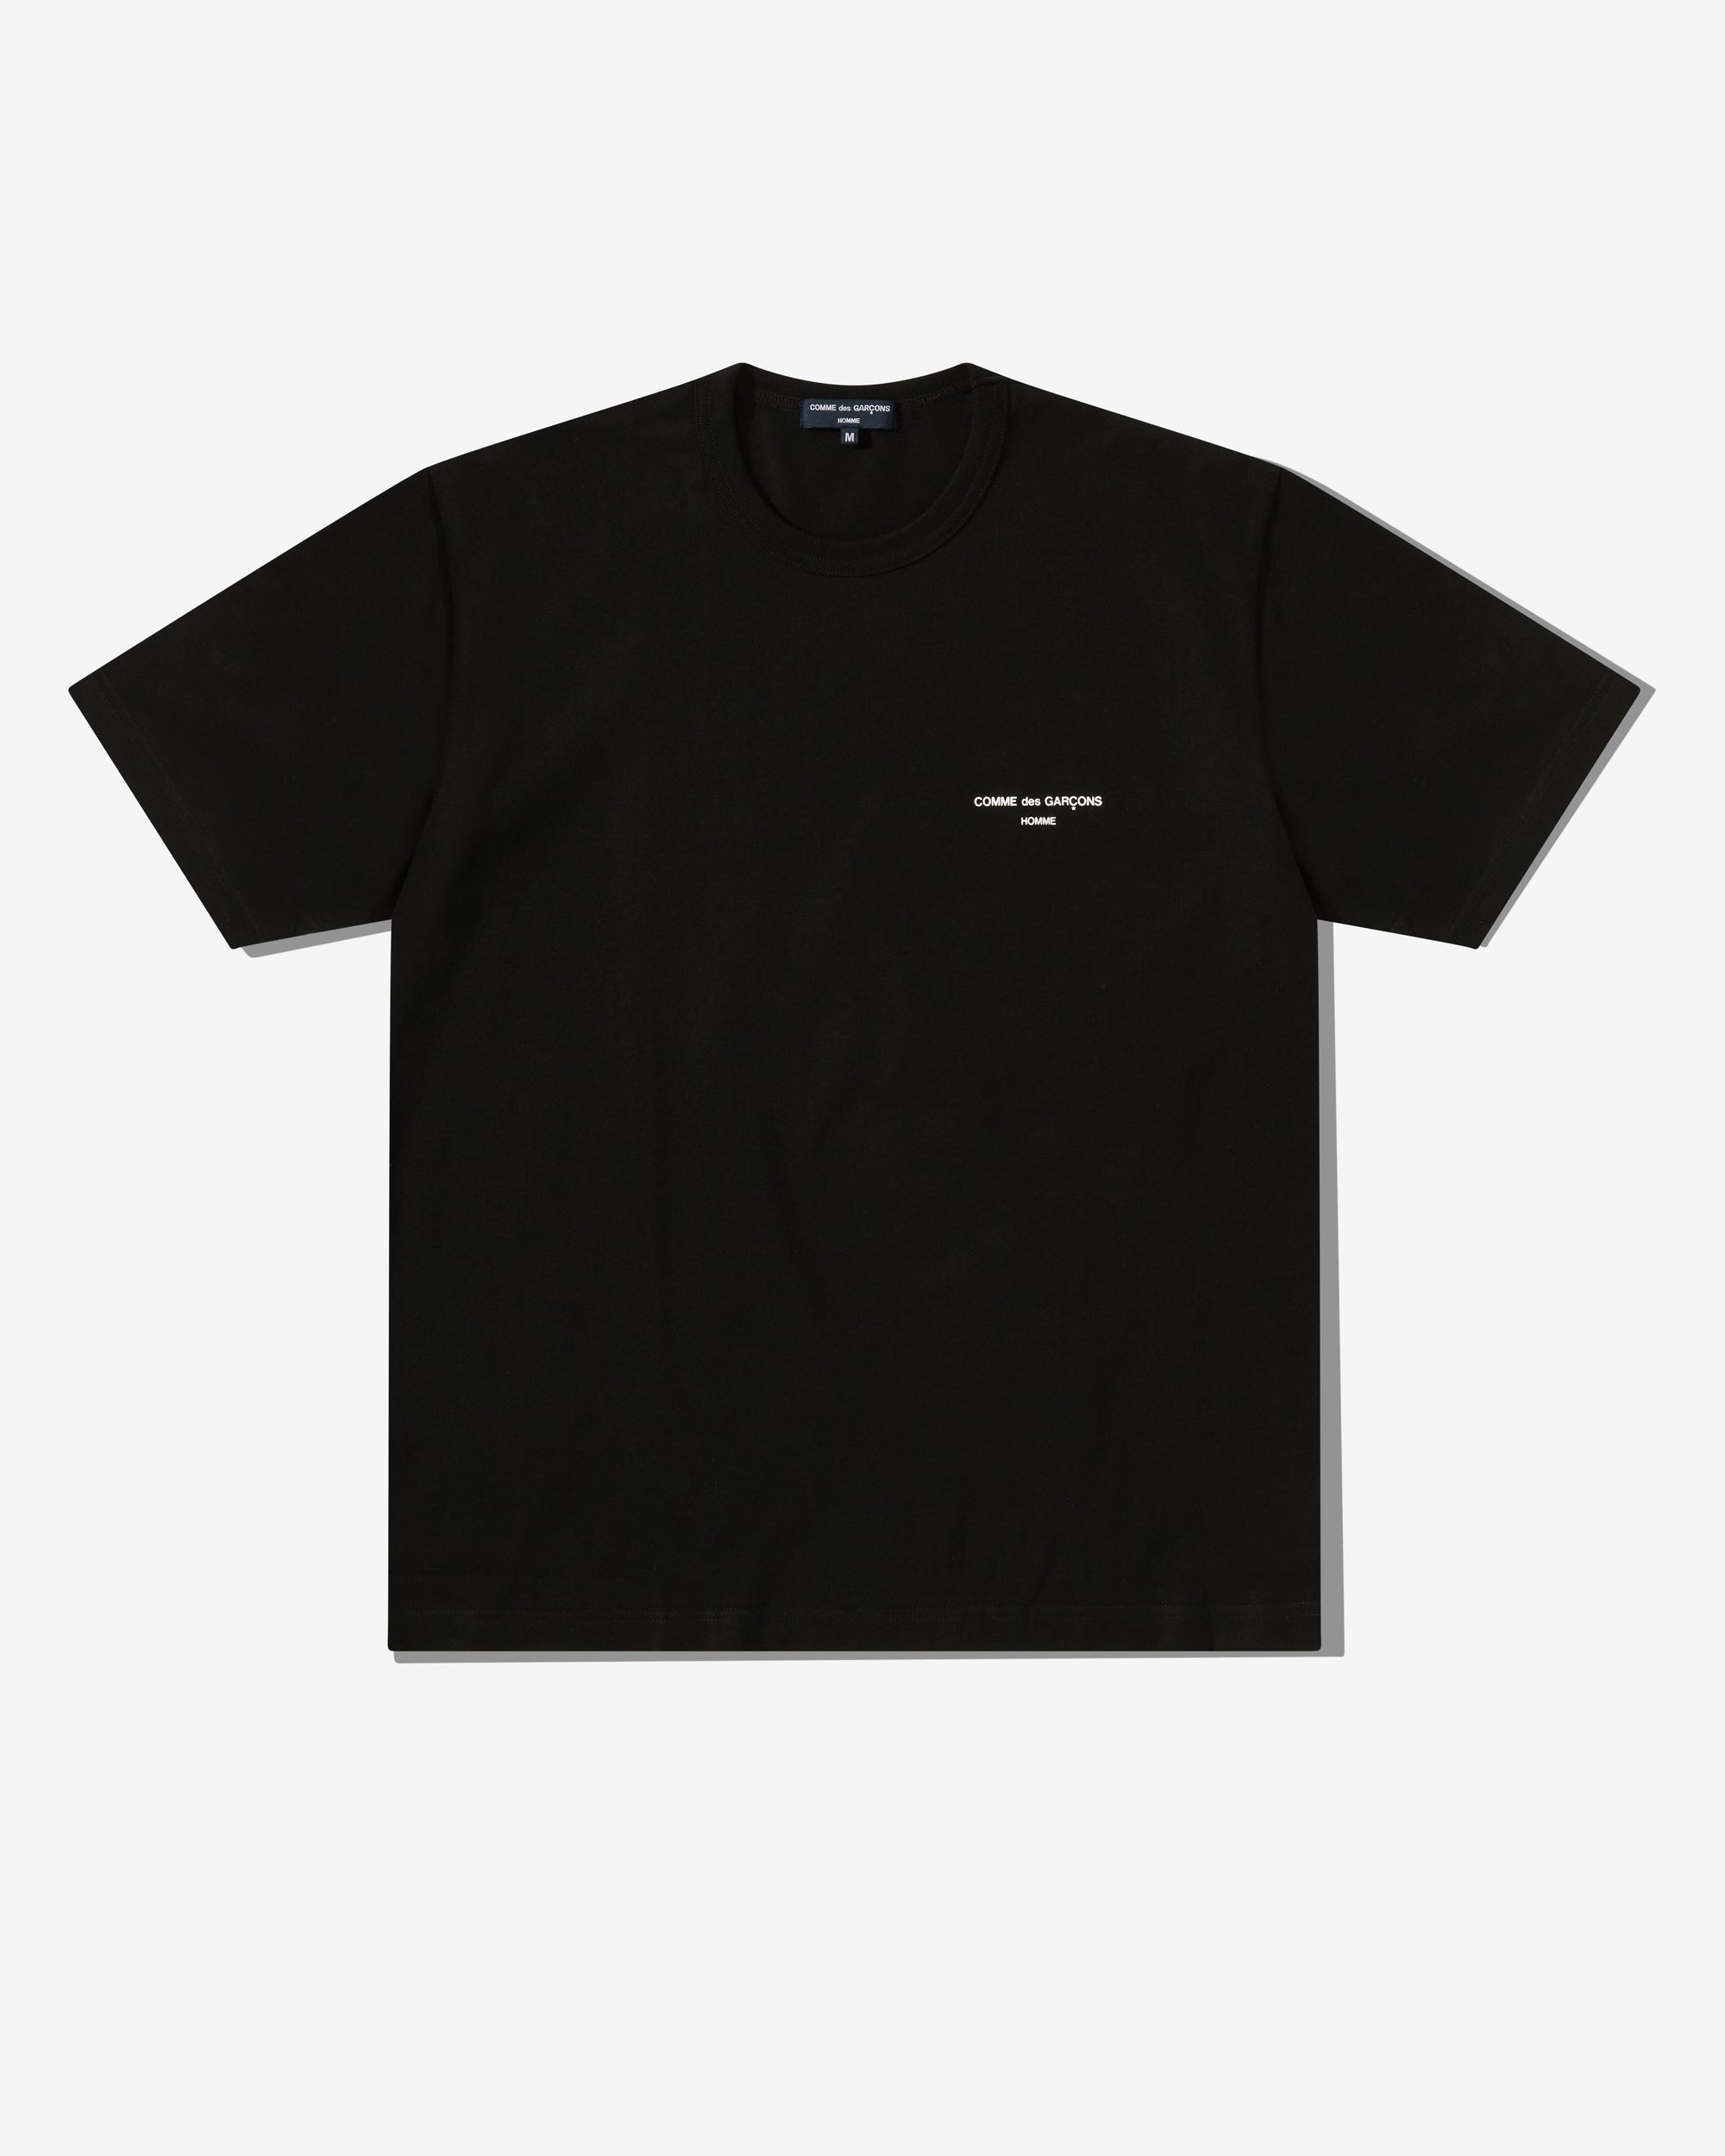 Comme des Garçons Homme - Men's Logo T-Shirt - (Black) view 1